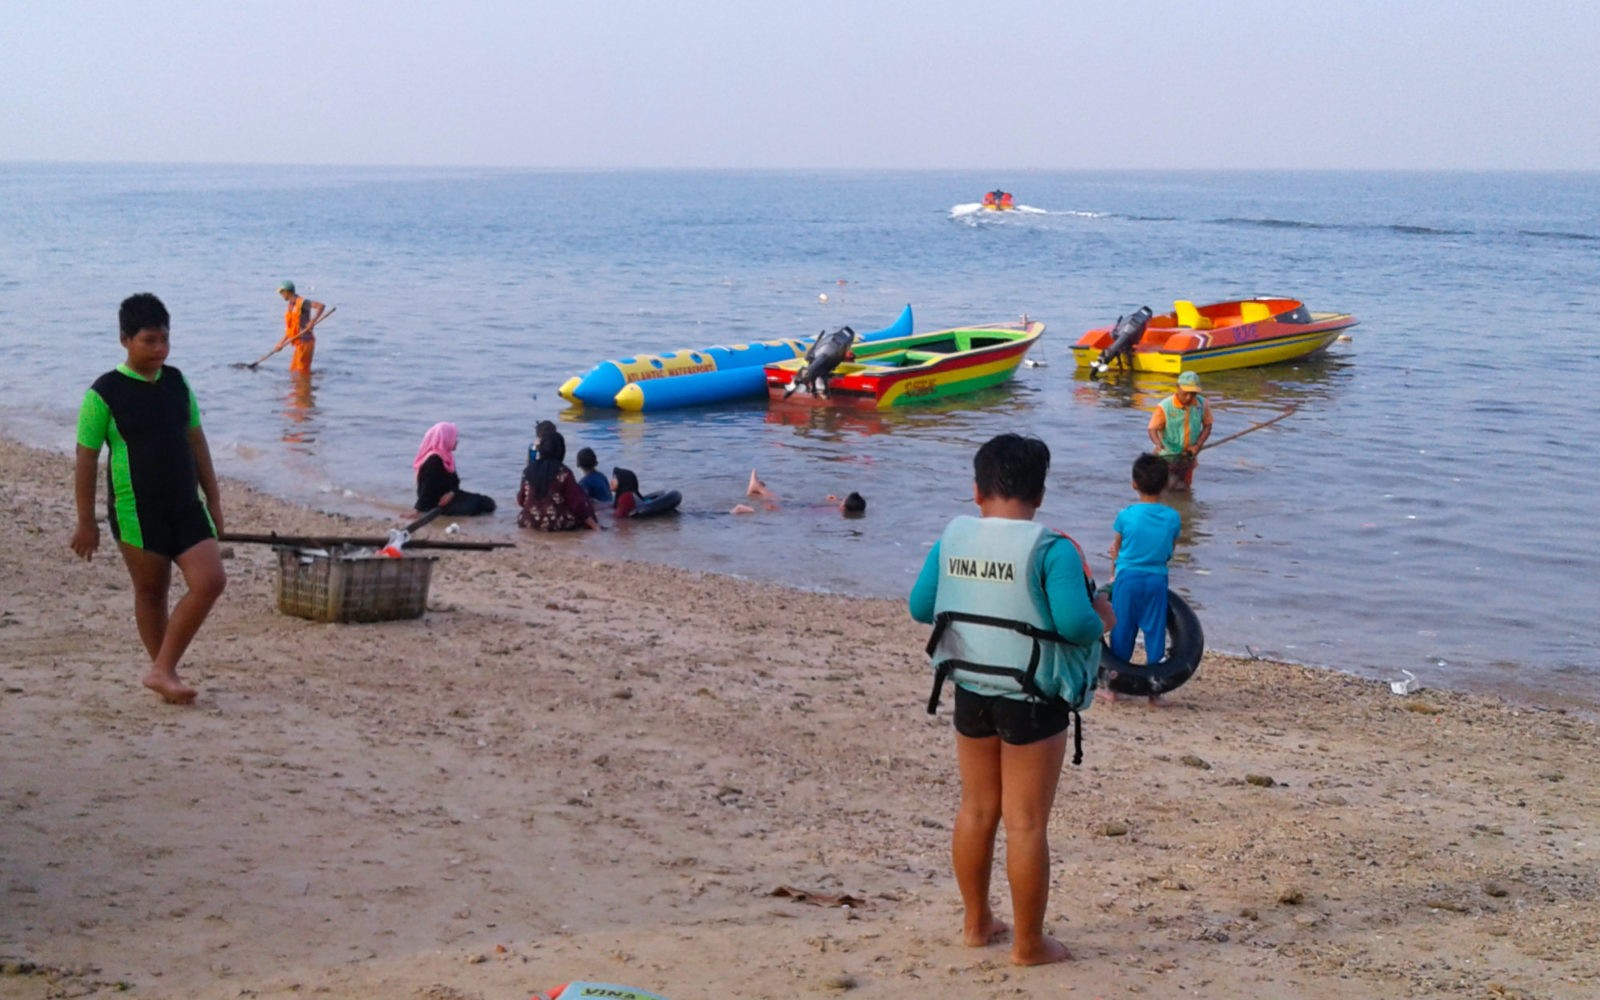 Pantai Tanjung Pasir Tiket & Ragam Aktivitas Wisata